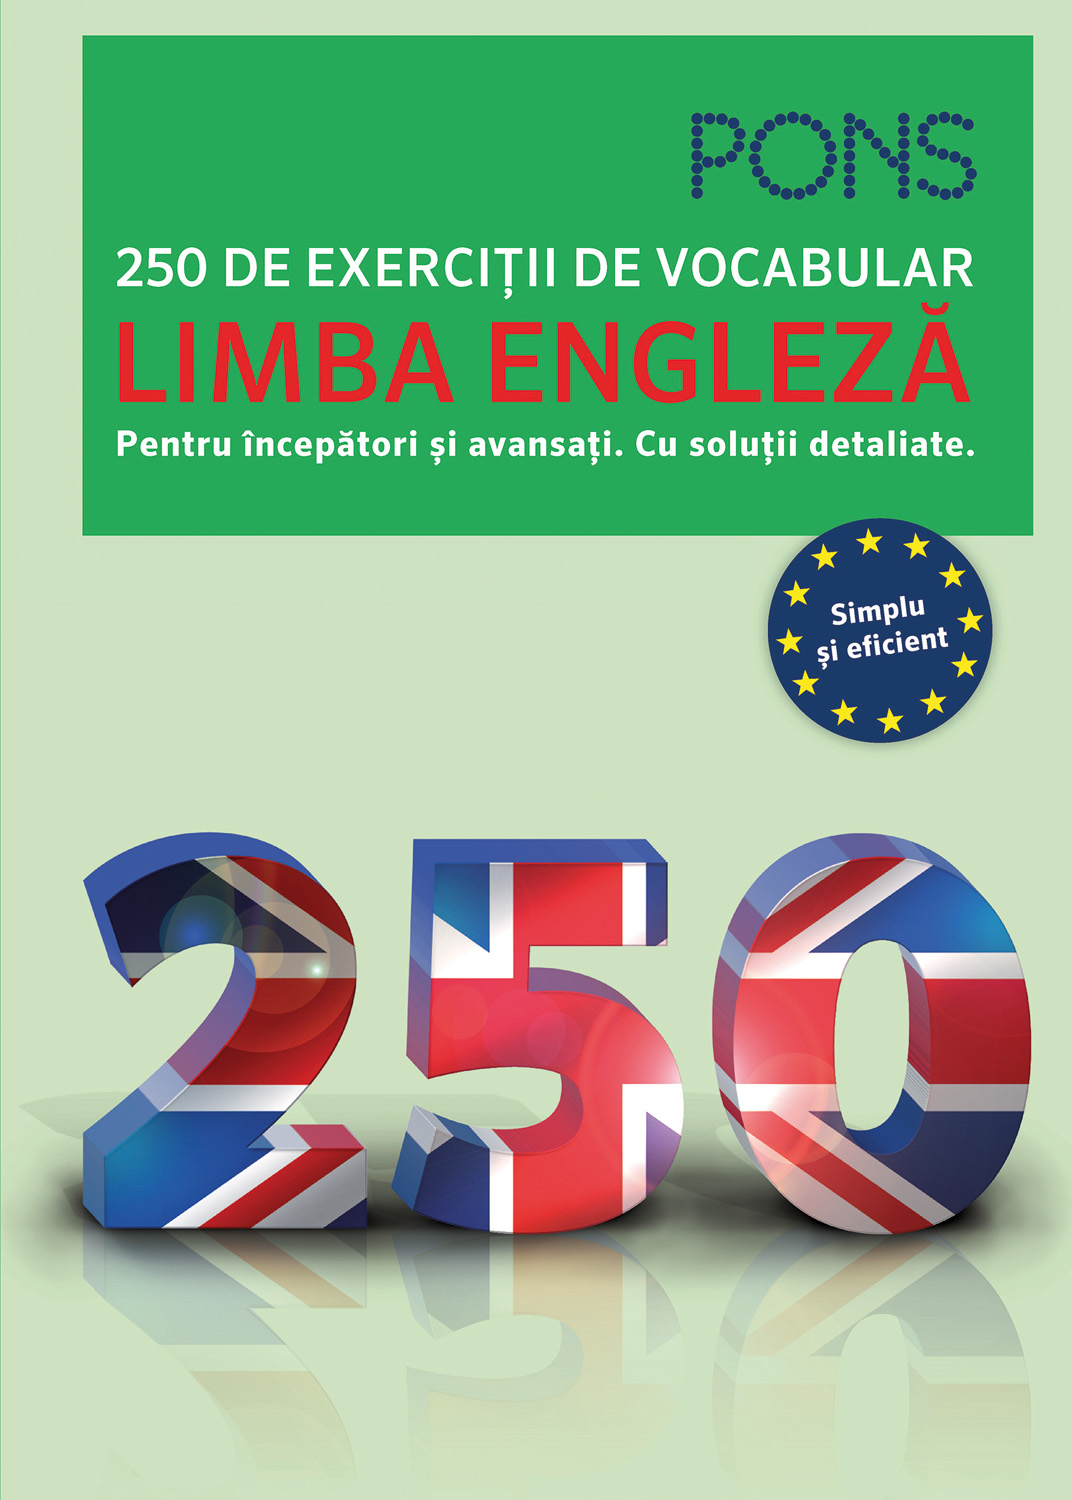 Litera - Limba engleză. 250 de exerciții de vocabular. pons